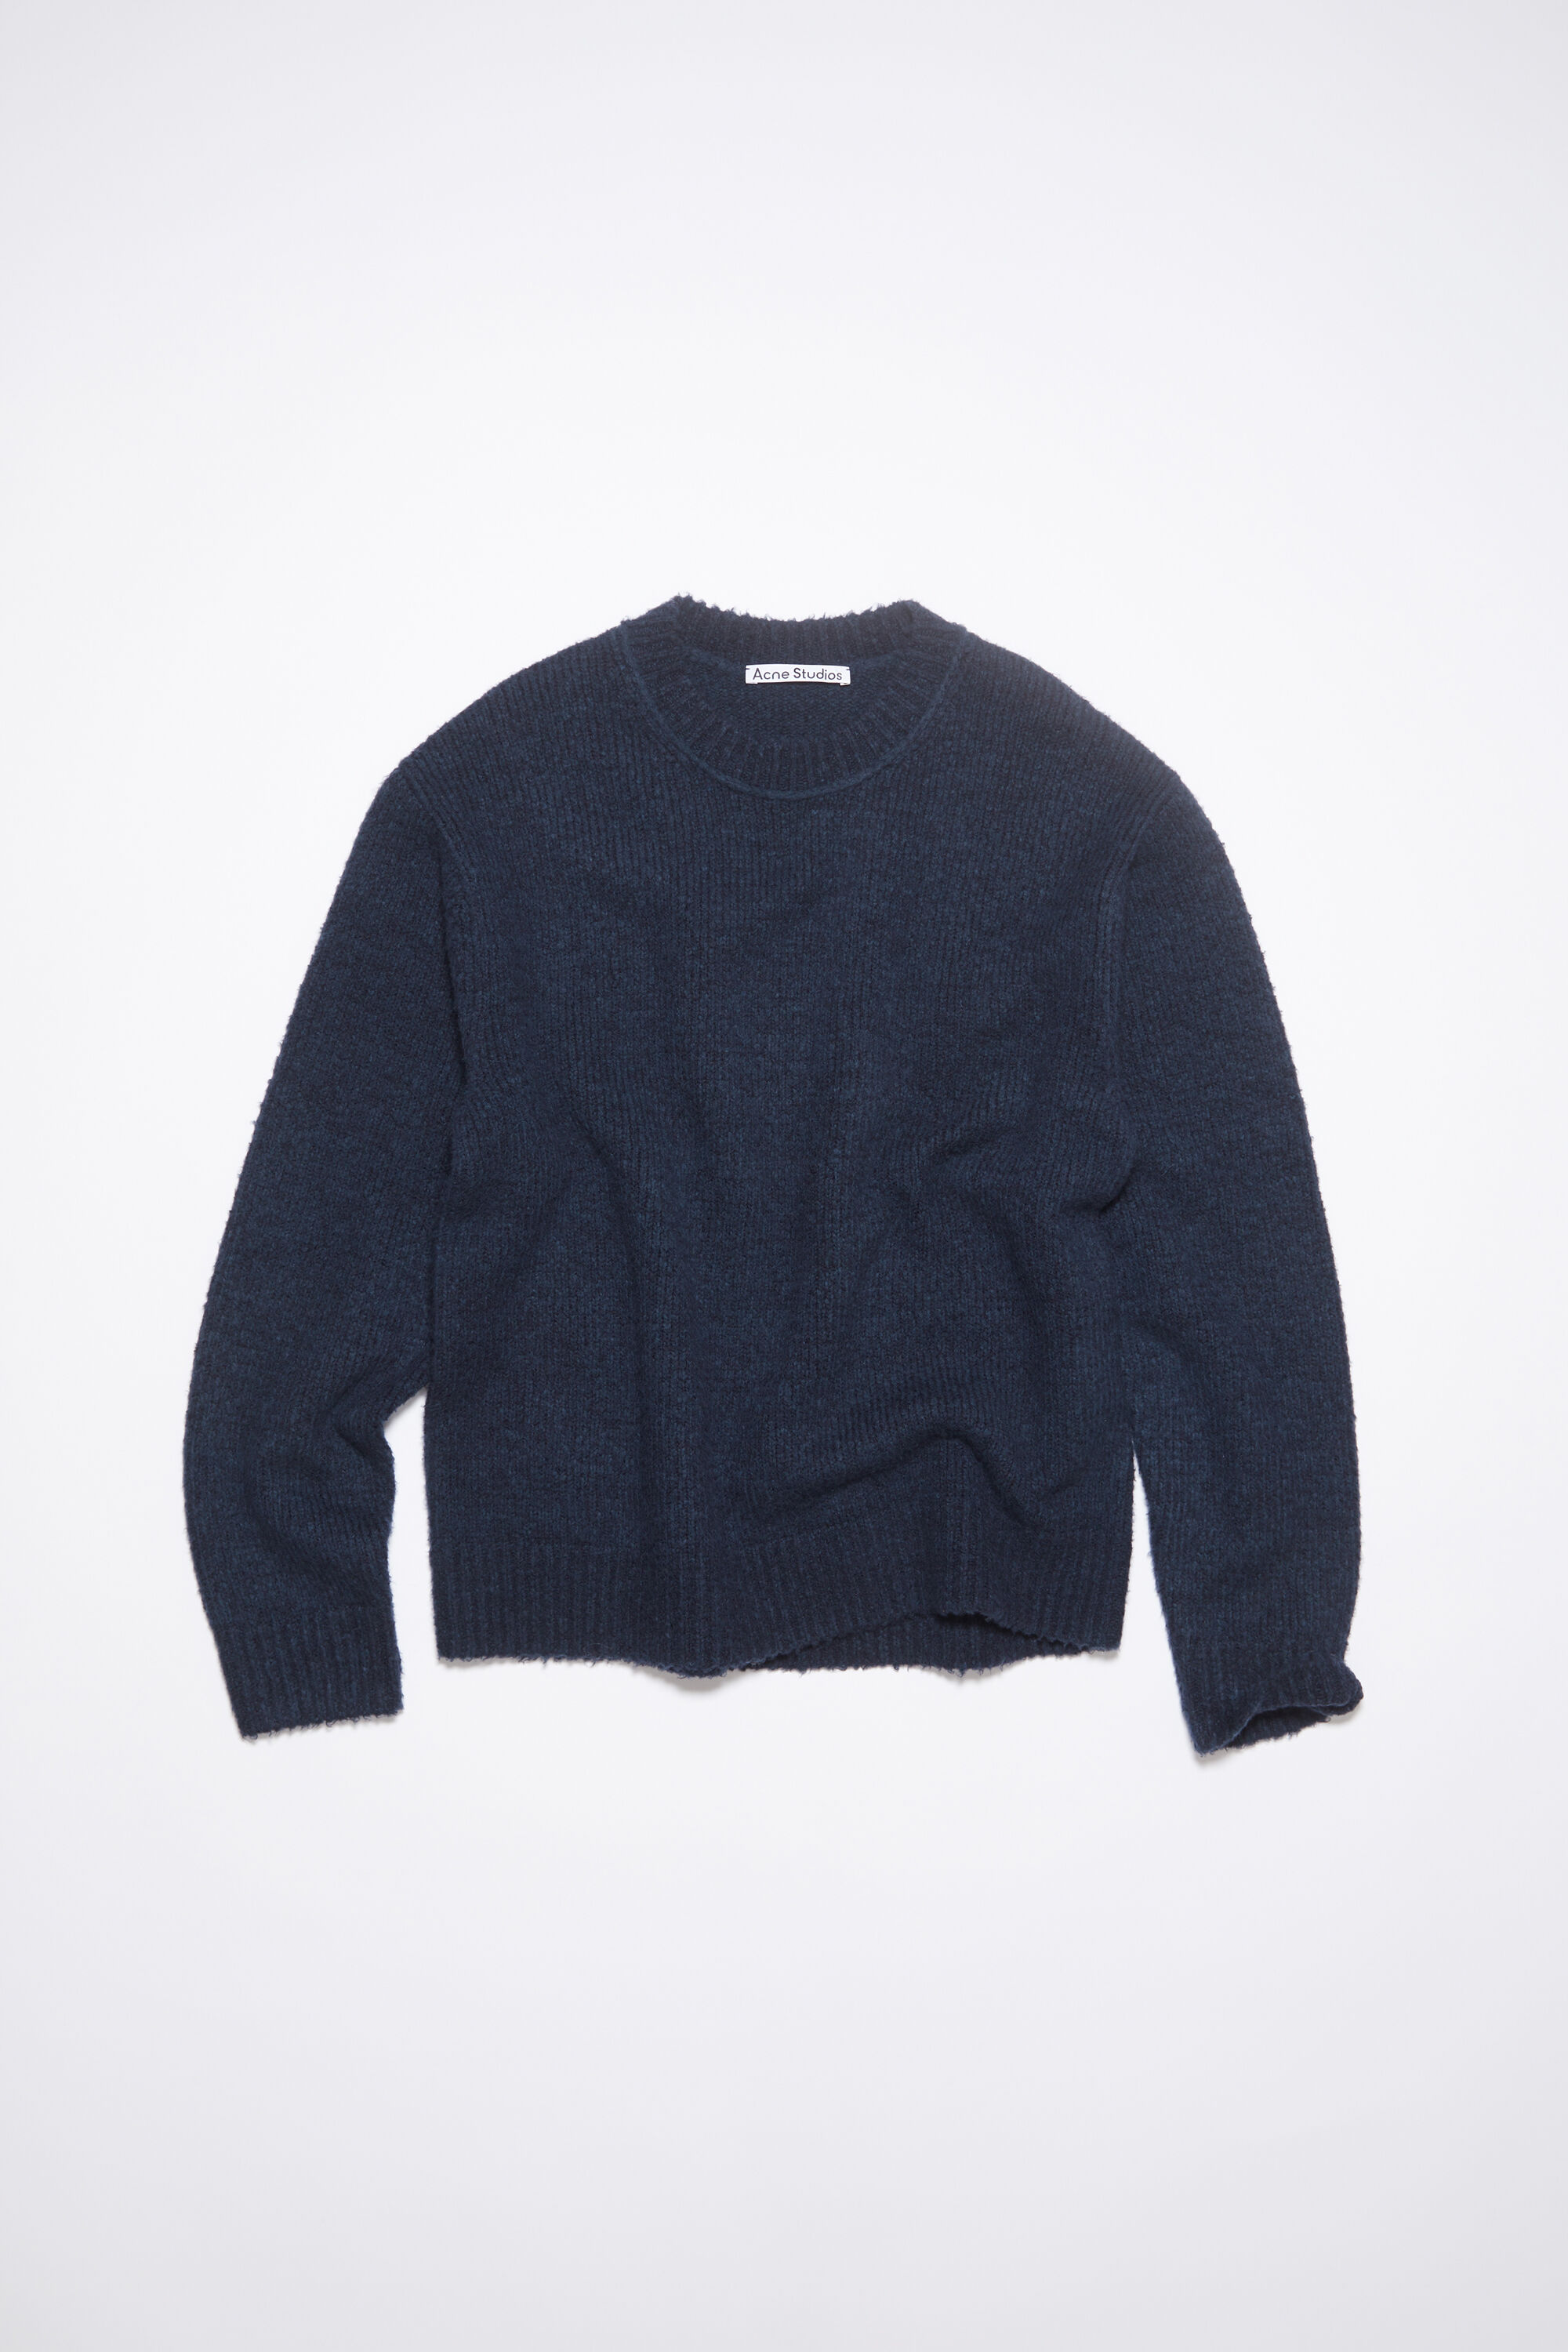 Acne Studios - Wool blend jumper - Navy